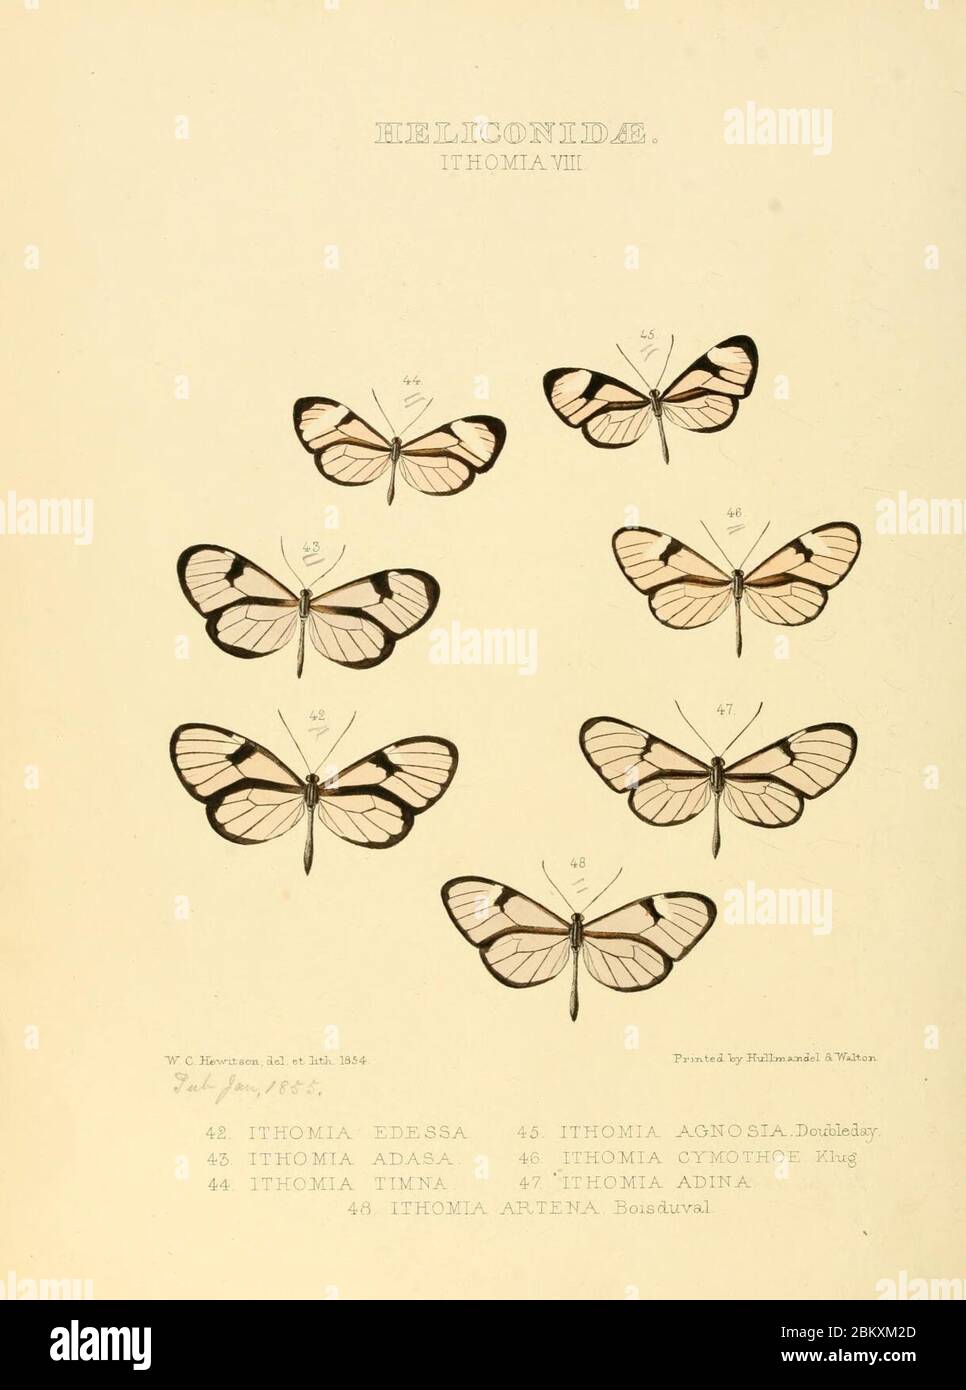 Illustrazioni di nuove specie di farfalle esotiche (Heliconidae- Ithomia VIII) Foto Stock